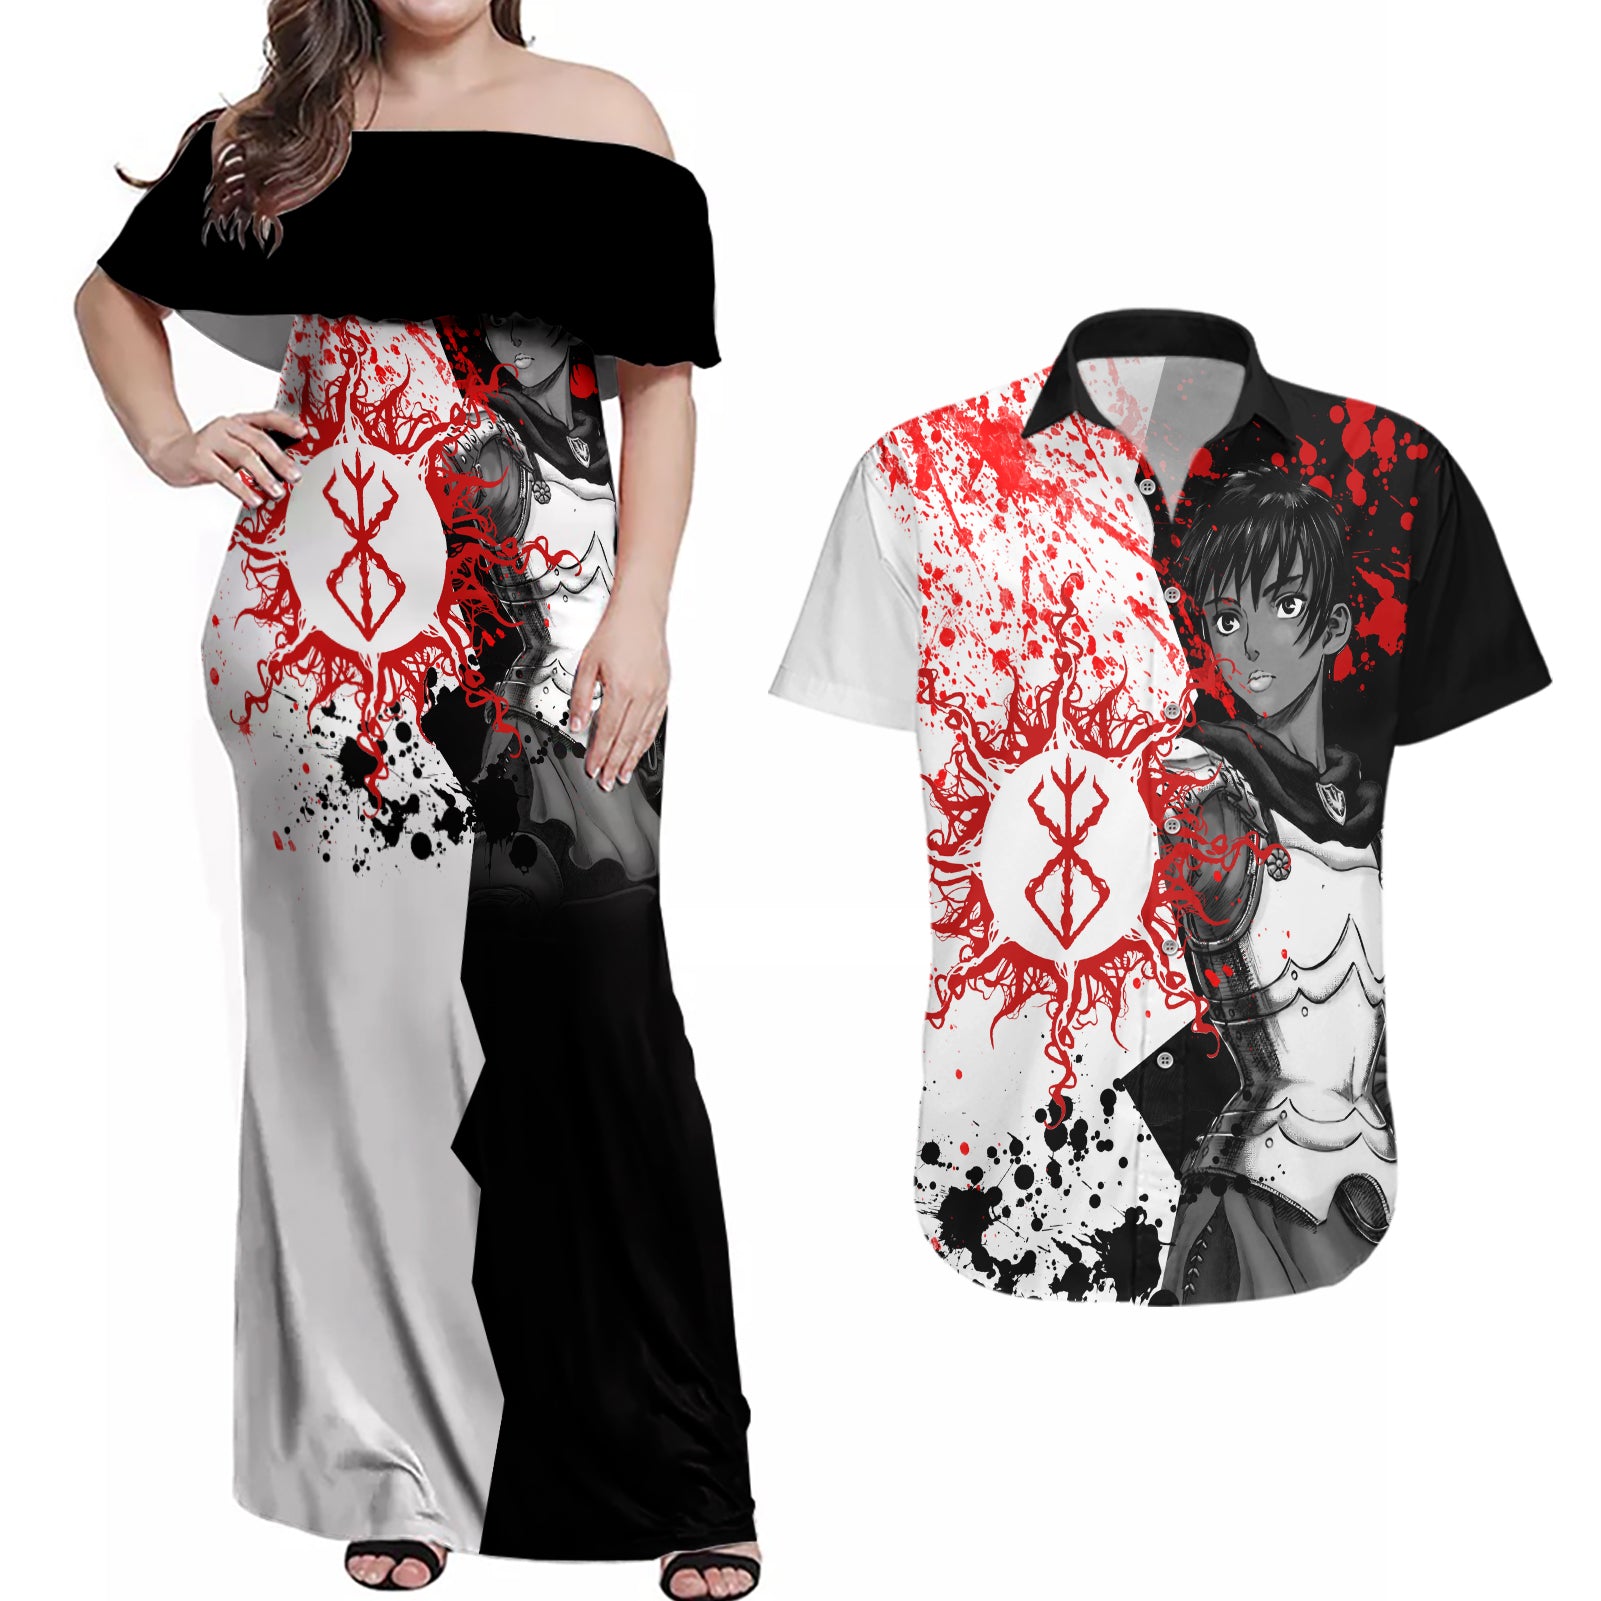 Casca Berserk Couples Matching Off Shoulder Maxi Dress and Hawaiian Shirt Grunge Blood Style